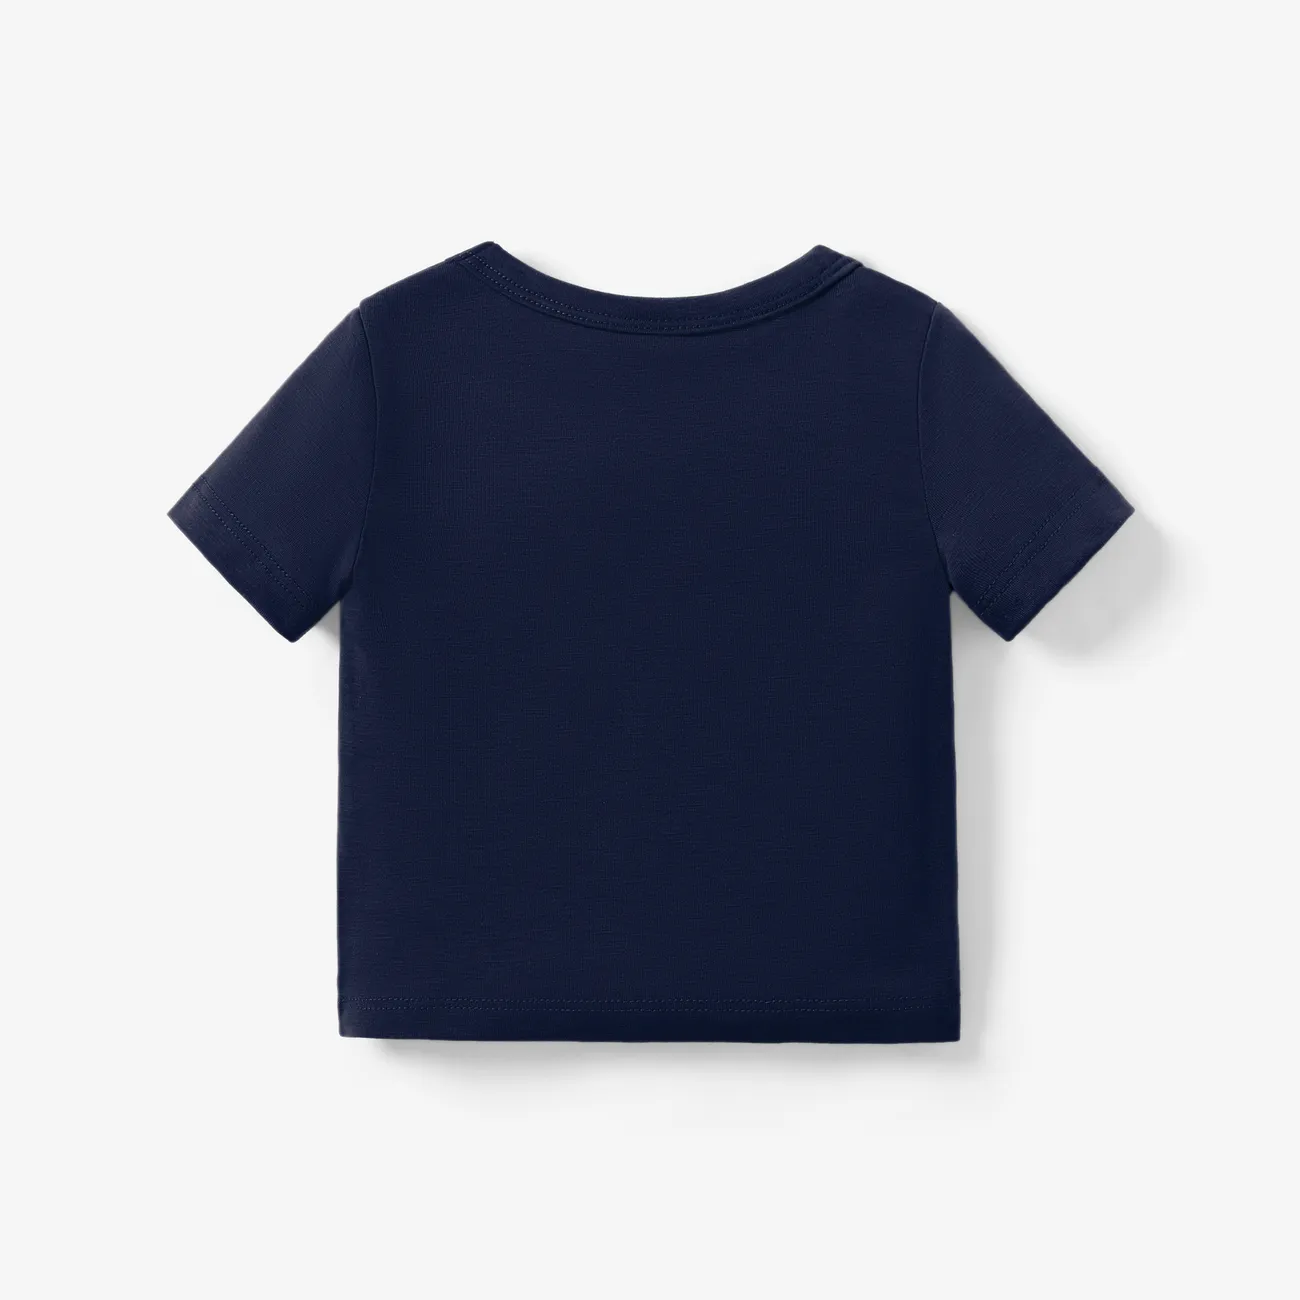 Bébé Unisexe Animaux Enfantin Manches courtes T-Shirt Bleu Foncé big image 1